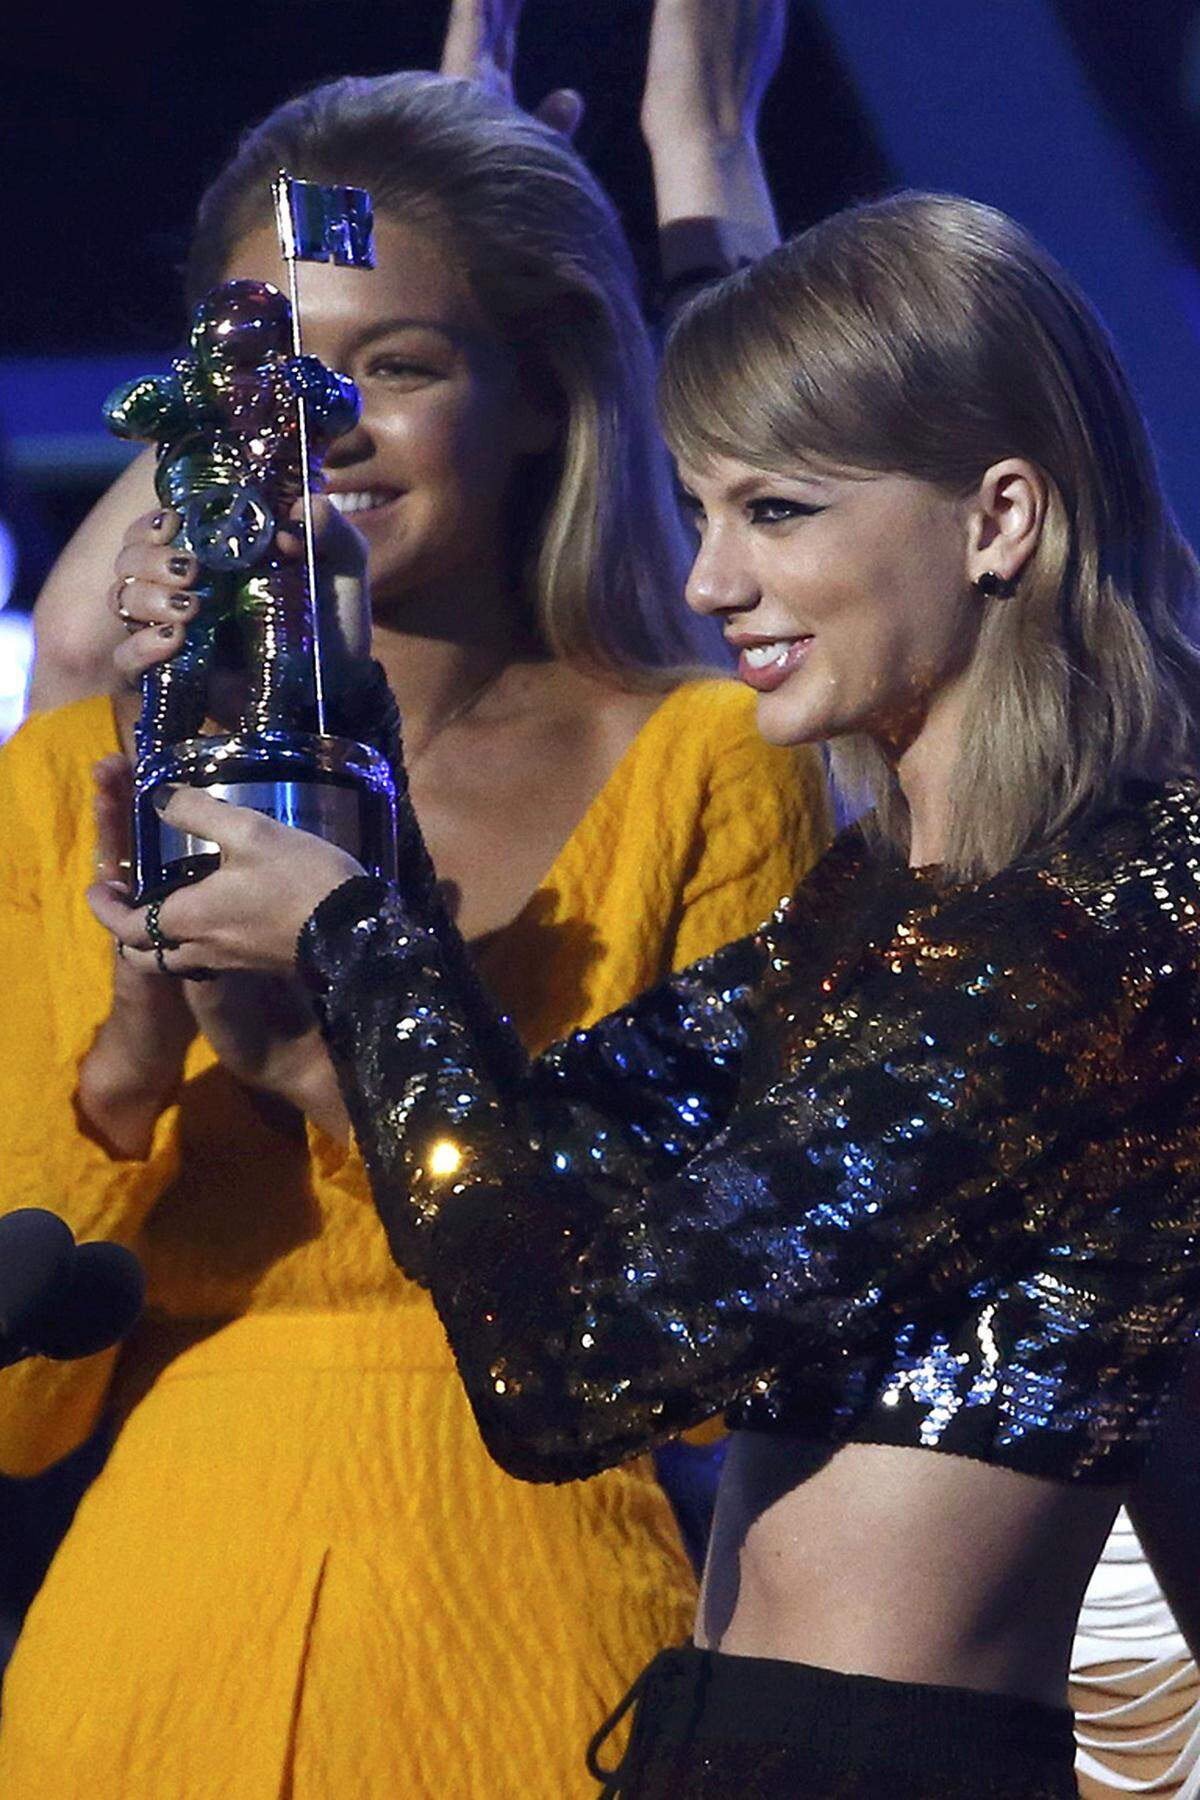 Taylor Swifts Video zu "Bad Blood", in dem viele Stars auftreten, war nach Ansicht von MTV auch das beste. Die beiden anderen Preise gewann die Popsängerin für "Blank Space". Swift war zehnmal nominiert, mehr als jeder andere. Es folgte Ed Sheeran mit sechs Nennungen - der sechsmal leer ausging.